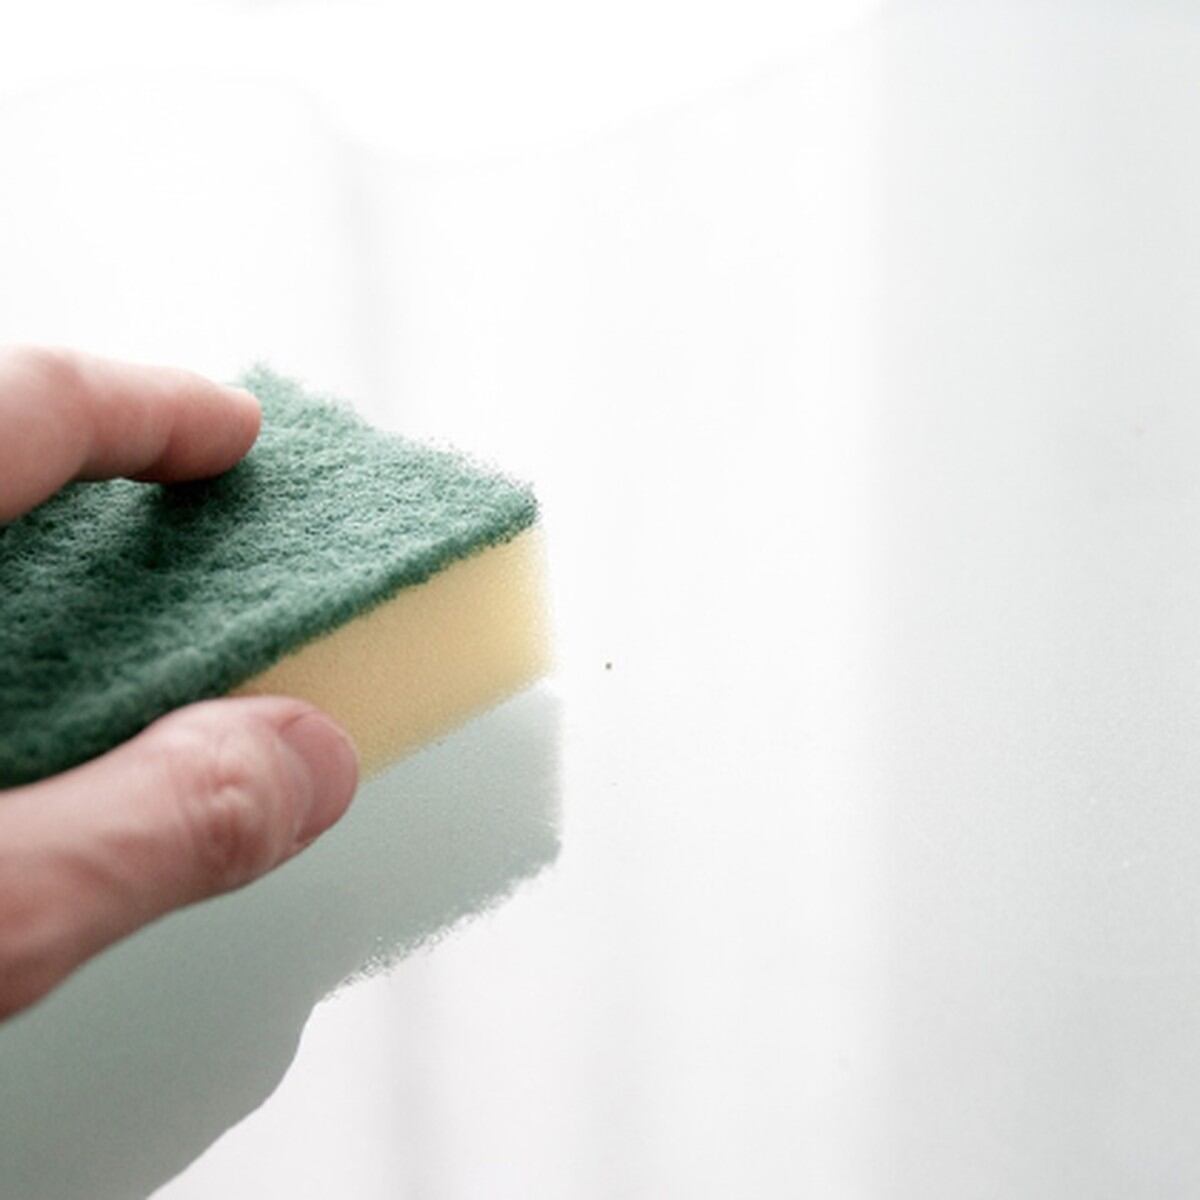 Qué tan durables y limpias son tus esponjas de cocina? - FOMAN